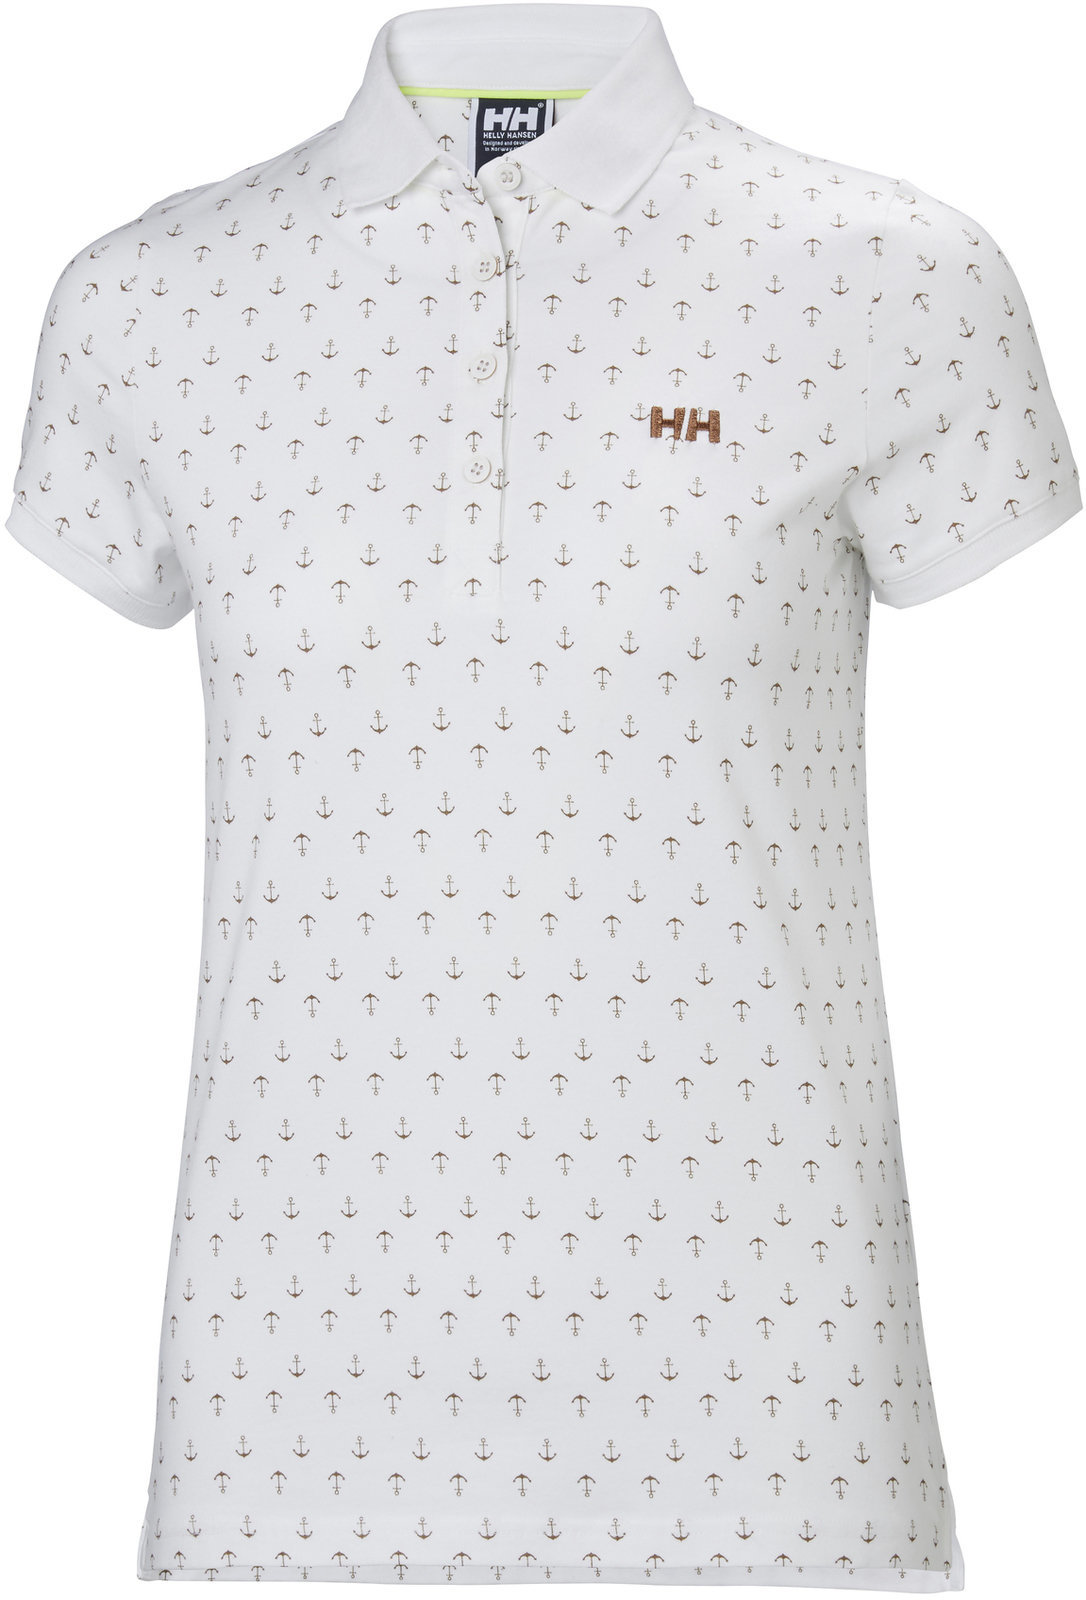 T-Shirt Helly Hansen W Naiad Breeze Polo White Anchor - M